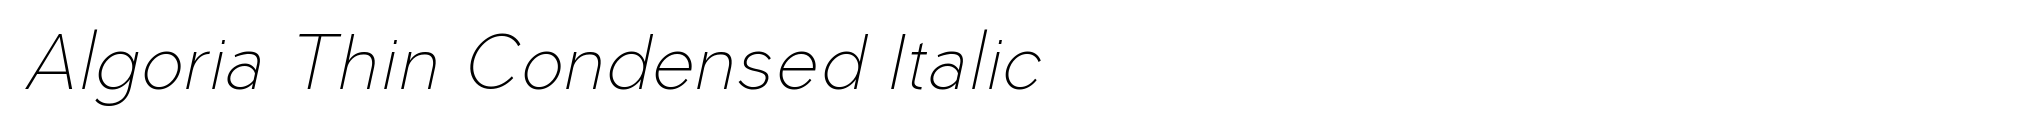 Algoria Thin Condensed Italic image